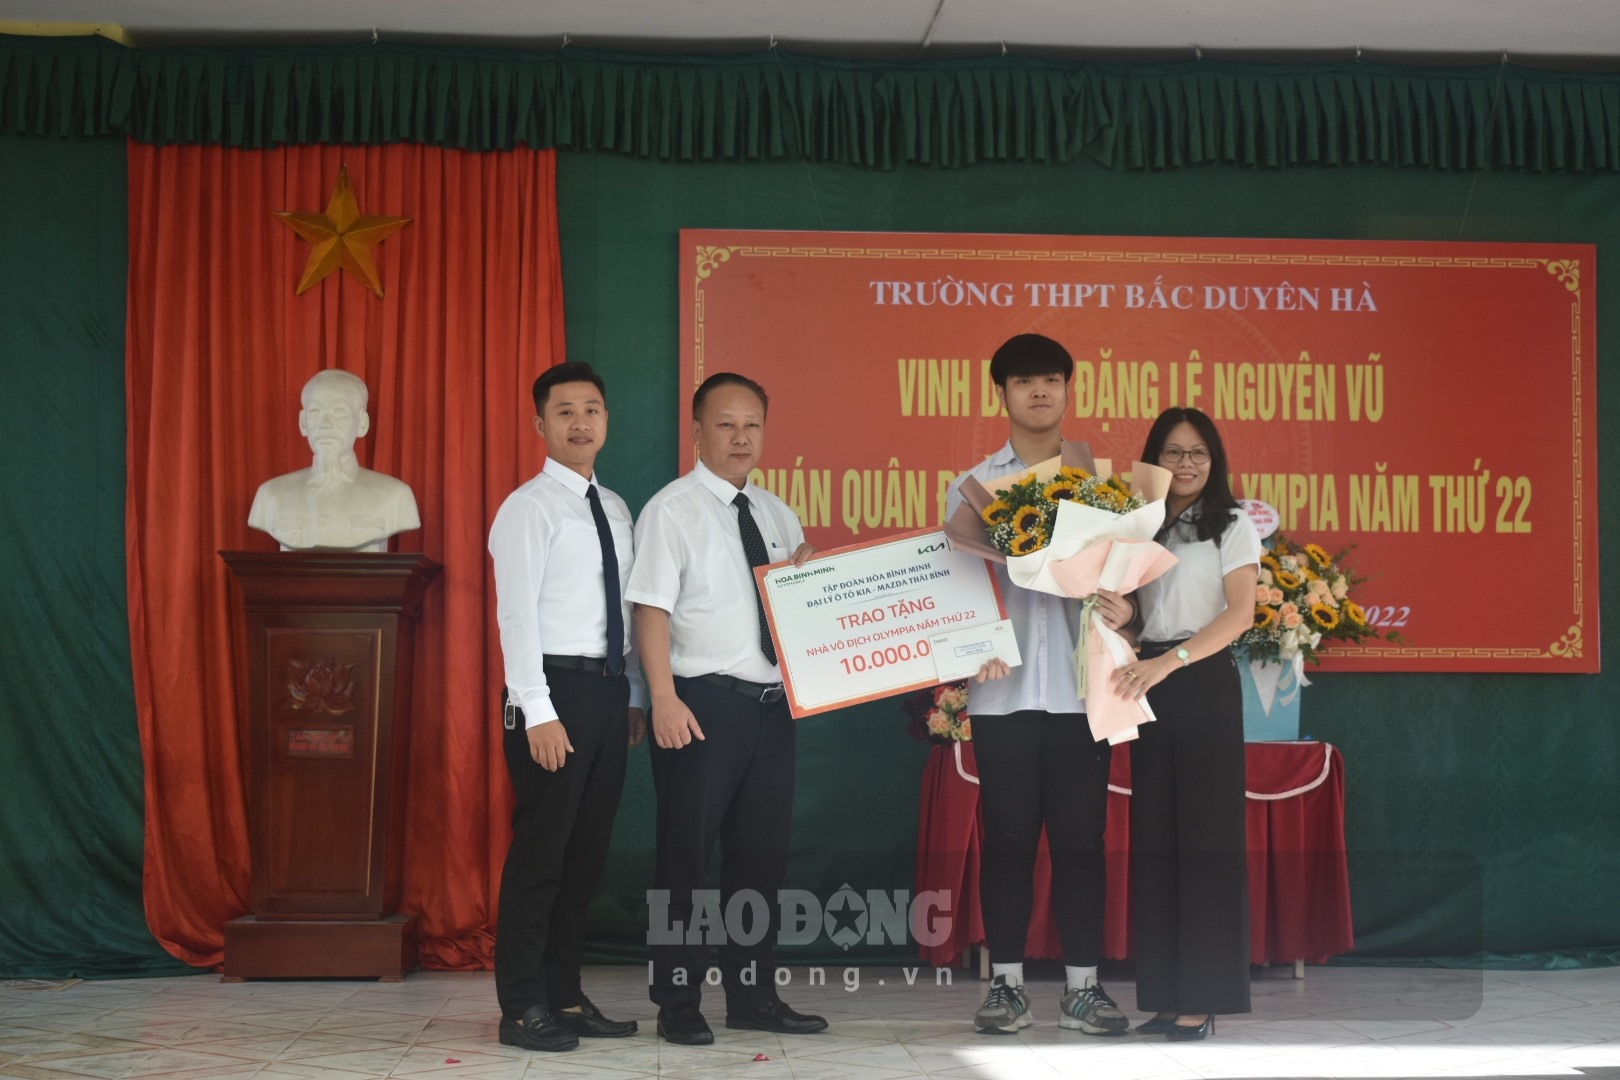 Các tổ chức, đơn vị, doanh nghiệp trao quà động viên Đặng Lê Nguyên Vũ và học sinh Trường THPT Bắc Duyên Hà. Ảnh: T.D